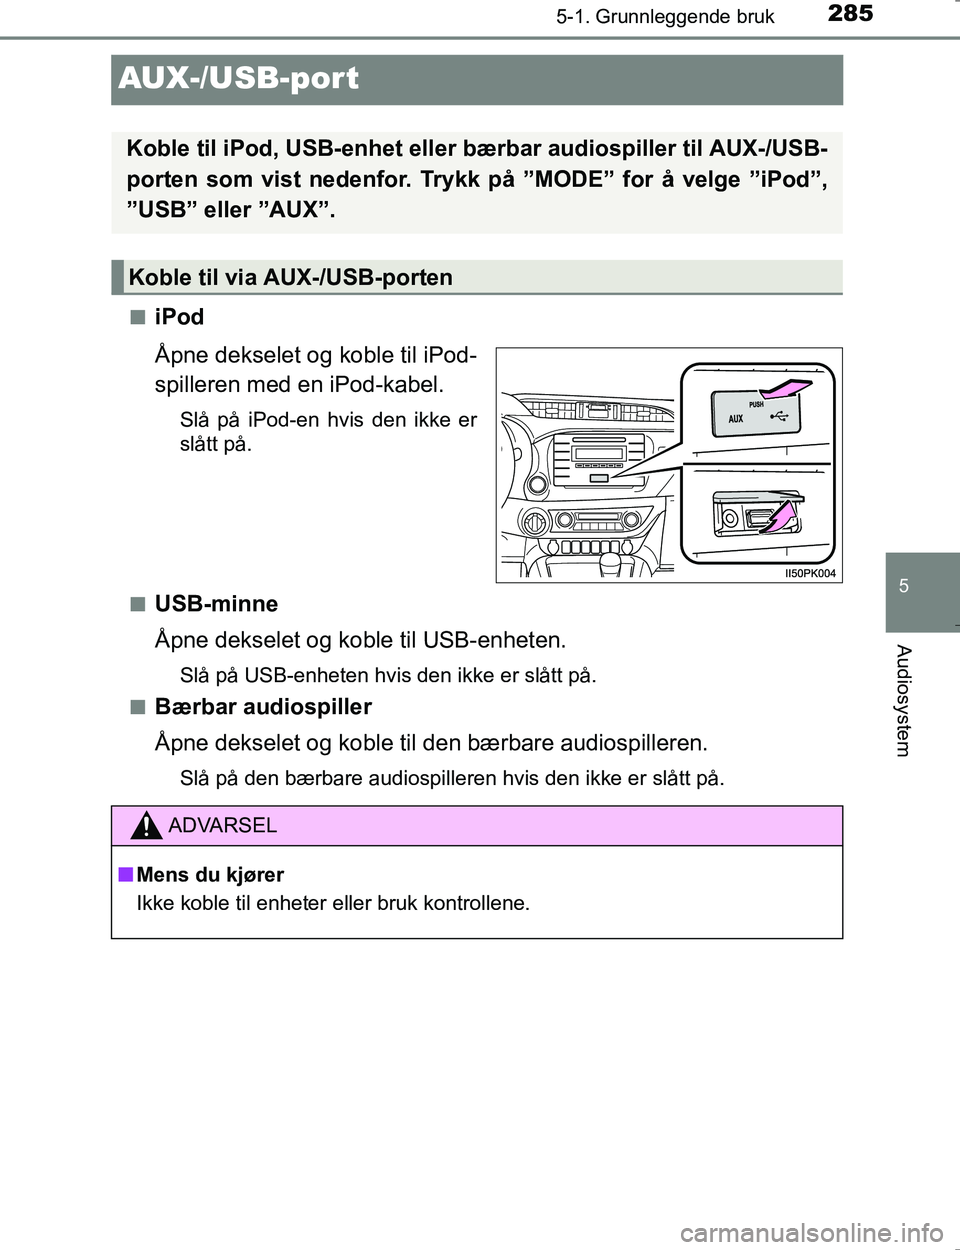 TOYOTA HILUX 2016  Instruksjoner for bruk (in Norwegian) 285
5
5-1. Grunnleggende bruk
Audiosystem
OM0K196E
AUX-/USB-por t
niPod
Åpne dekselet og koble til iPod-
spilleren med en iPod-kabel.
Slå på iPod-en hvis den ikke er
slått på.
n
USB-minne
Åpne d